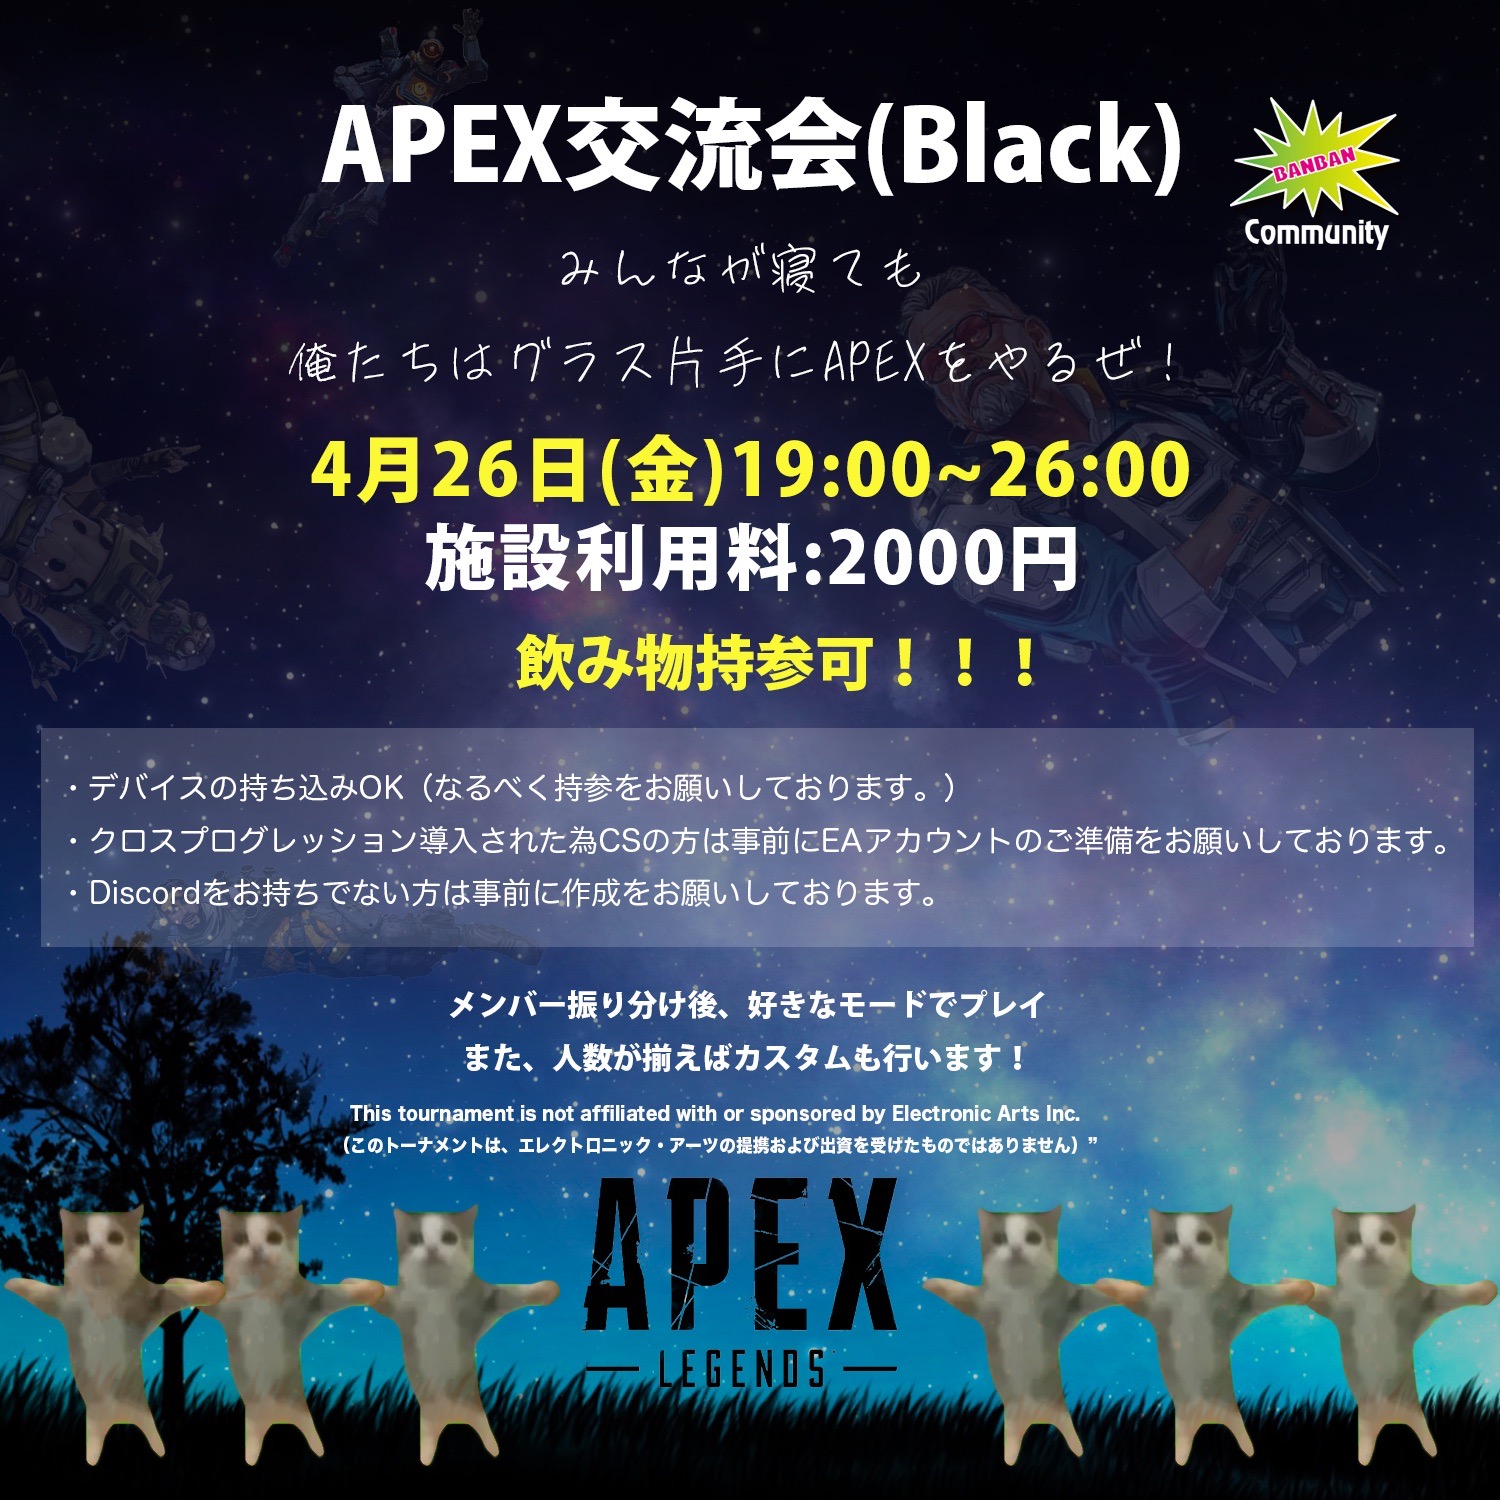 4/26(金) 深夜営業あり APEX交流会(Black)